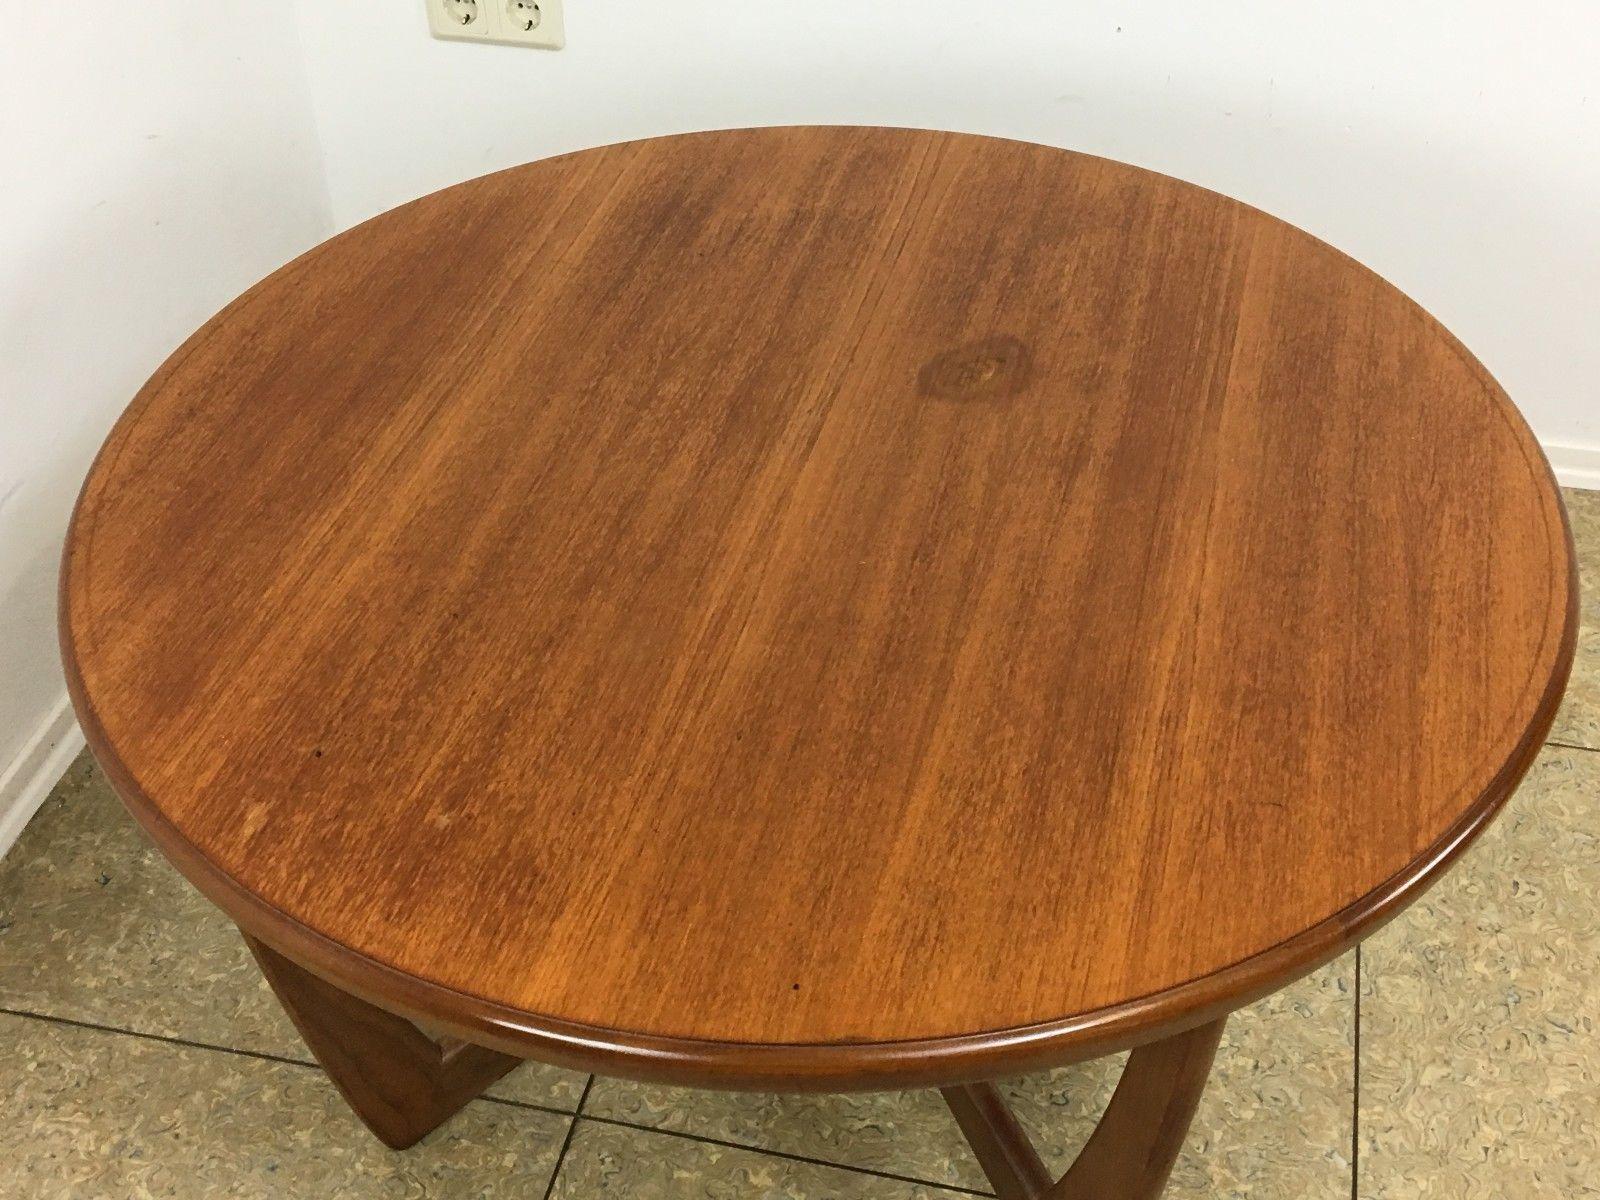 European 70s Teak Side Table Coffee Table Danish Modern Design Denmark For Sale